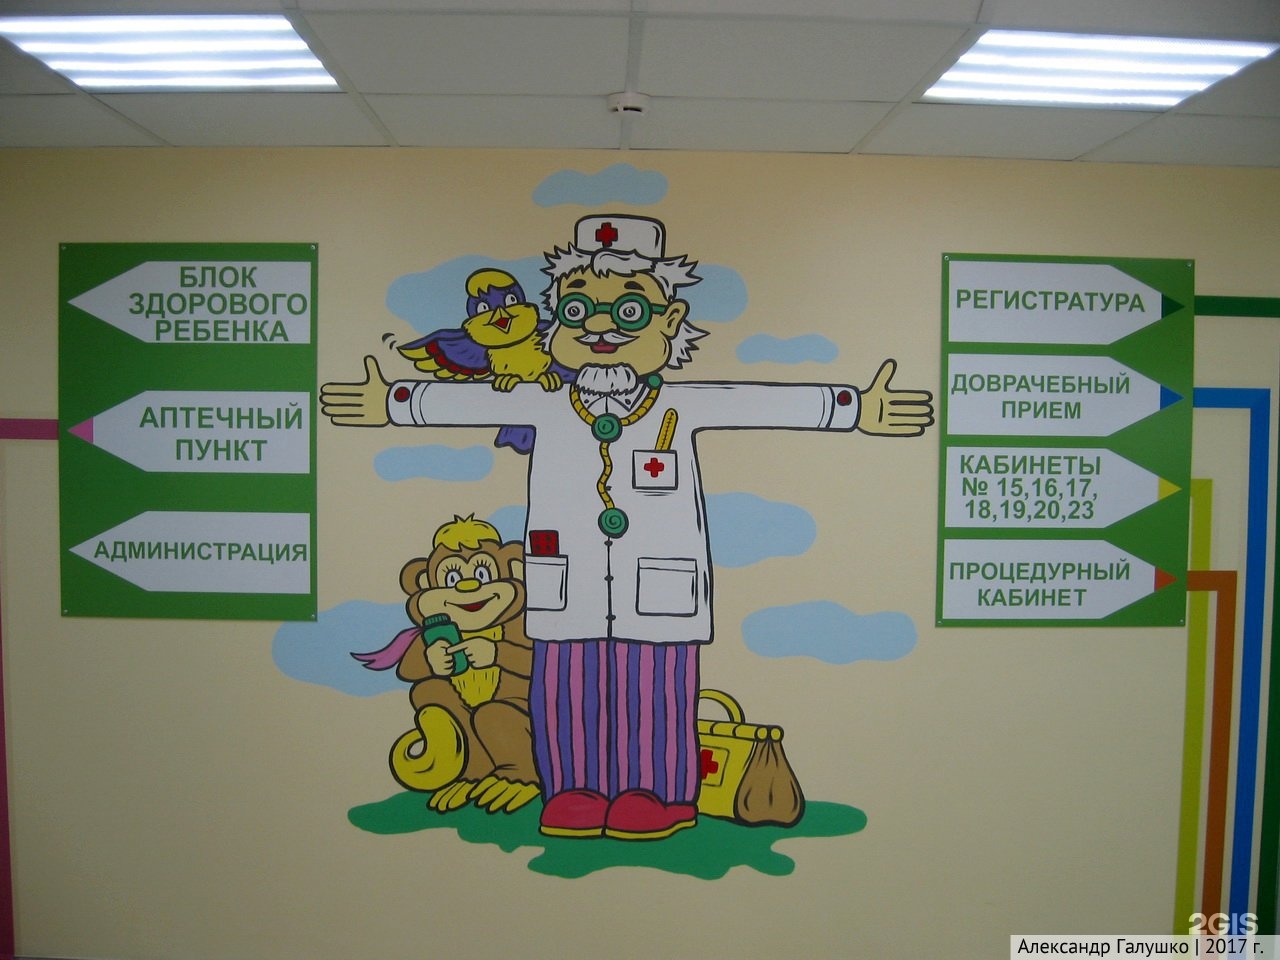 Указатели в детской поликлинике